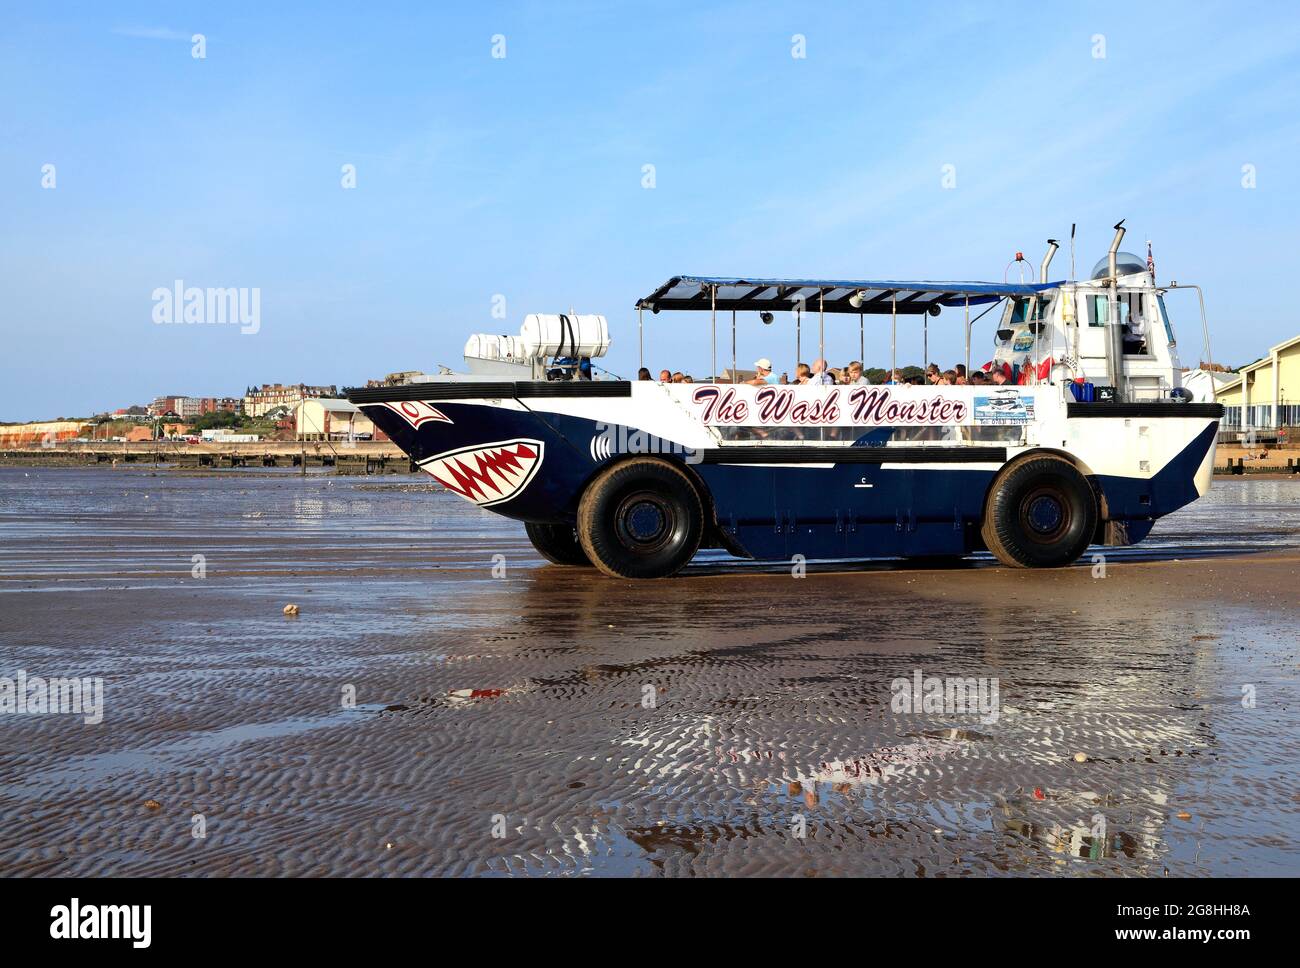 Das Wash Monster, das Meer betreten, Vergnügungsboot, Ausflüge, Passagiere, Hunstanton Beach, Norfolk, England, Großbritannien Stockfoto